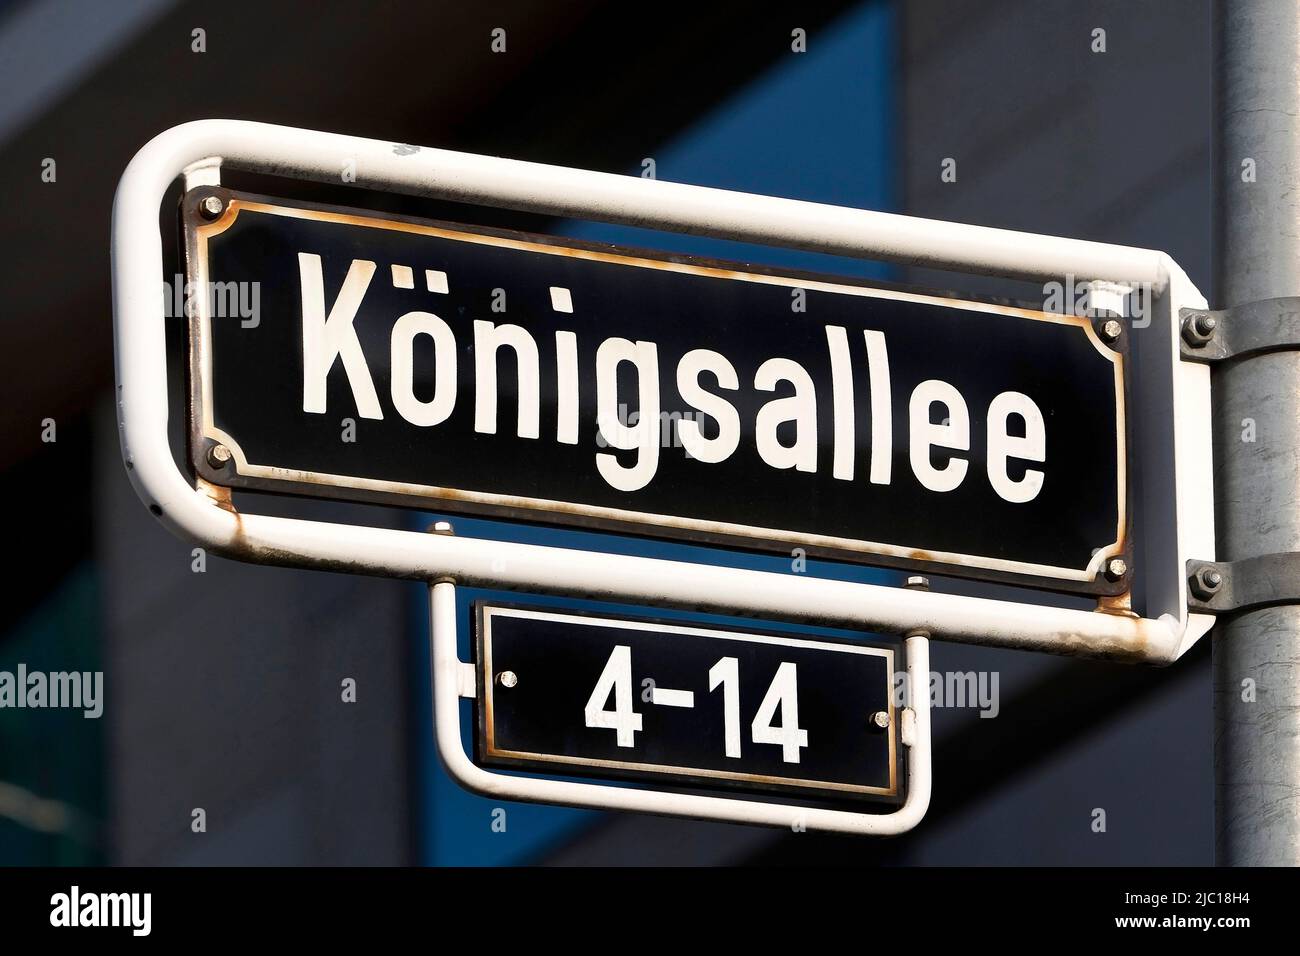 Strada segno Koenigsallee, chiamato Koe, una strada commerciale di lusso ben nota, Germania, Renania settentrionale-Vestfalia, basso Reno, Dusseldorf Foto Stock